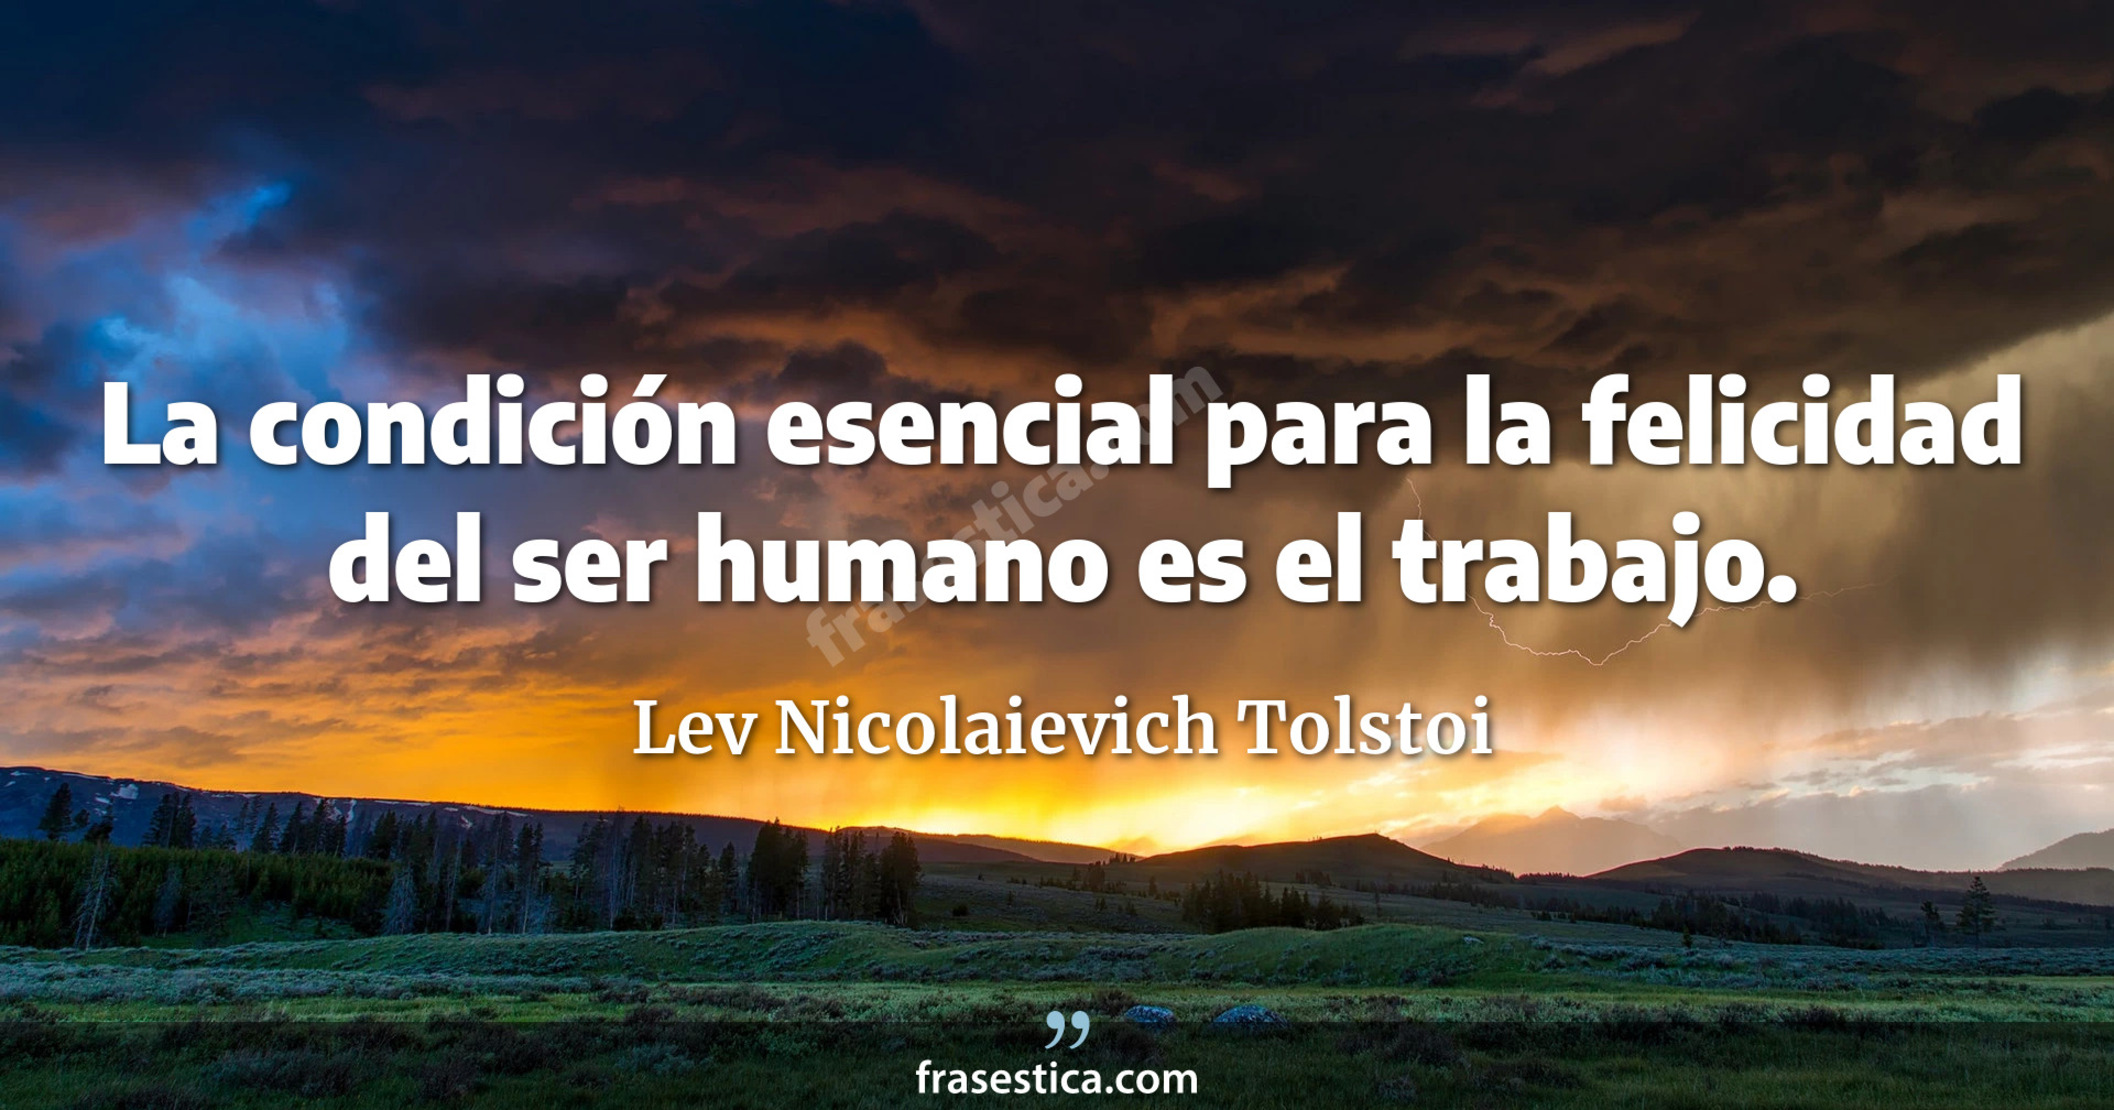 La condición esencial para la felicidad del ser humano es el trabajo. - Lev Nicolaievich Tolstoi